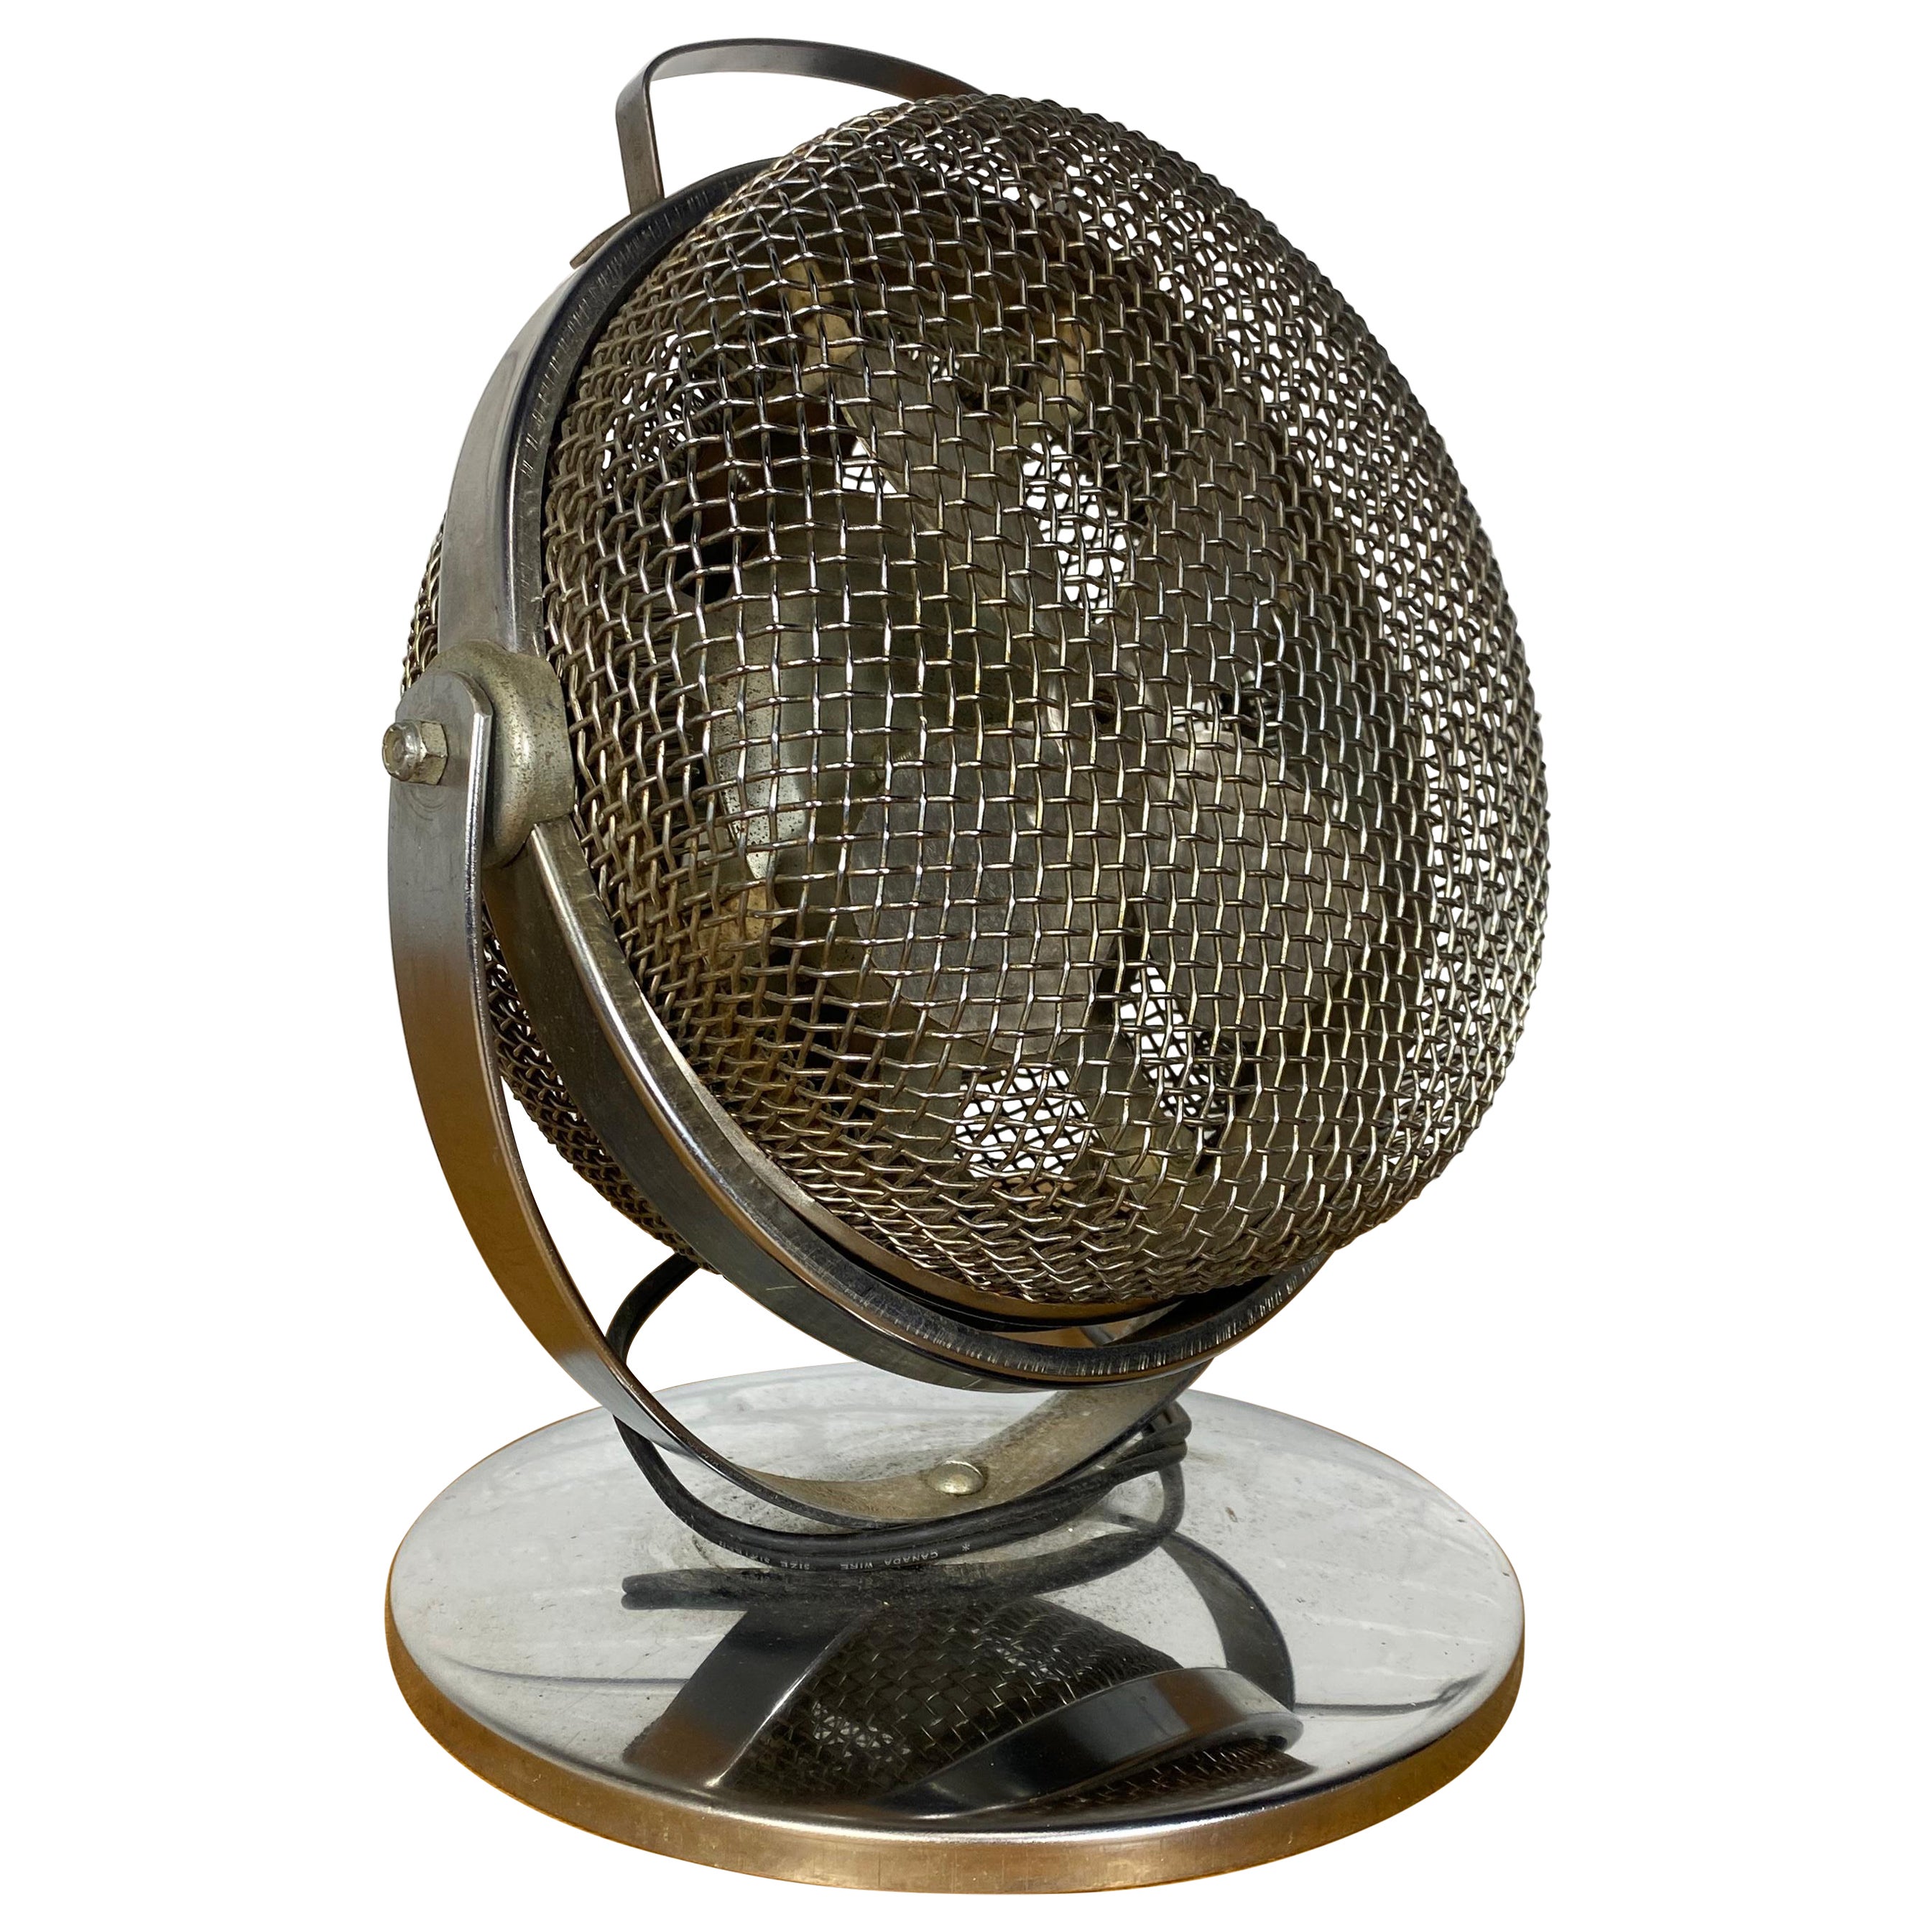 Machine Age / Art Deco Elektrischer Ventilator / Heizgerät von ORLI.